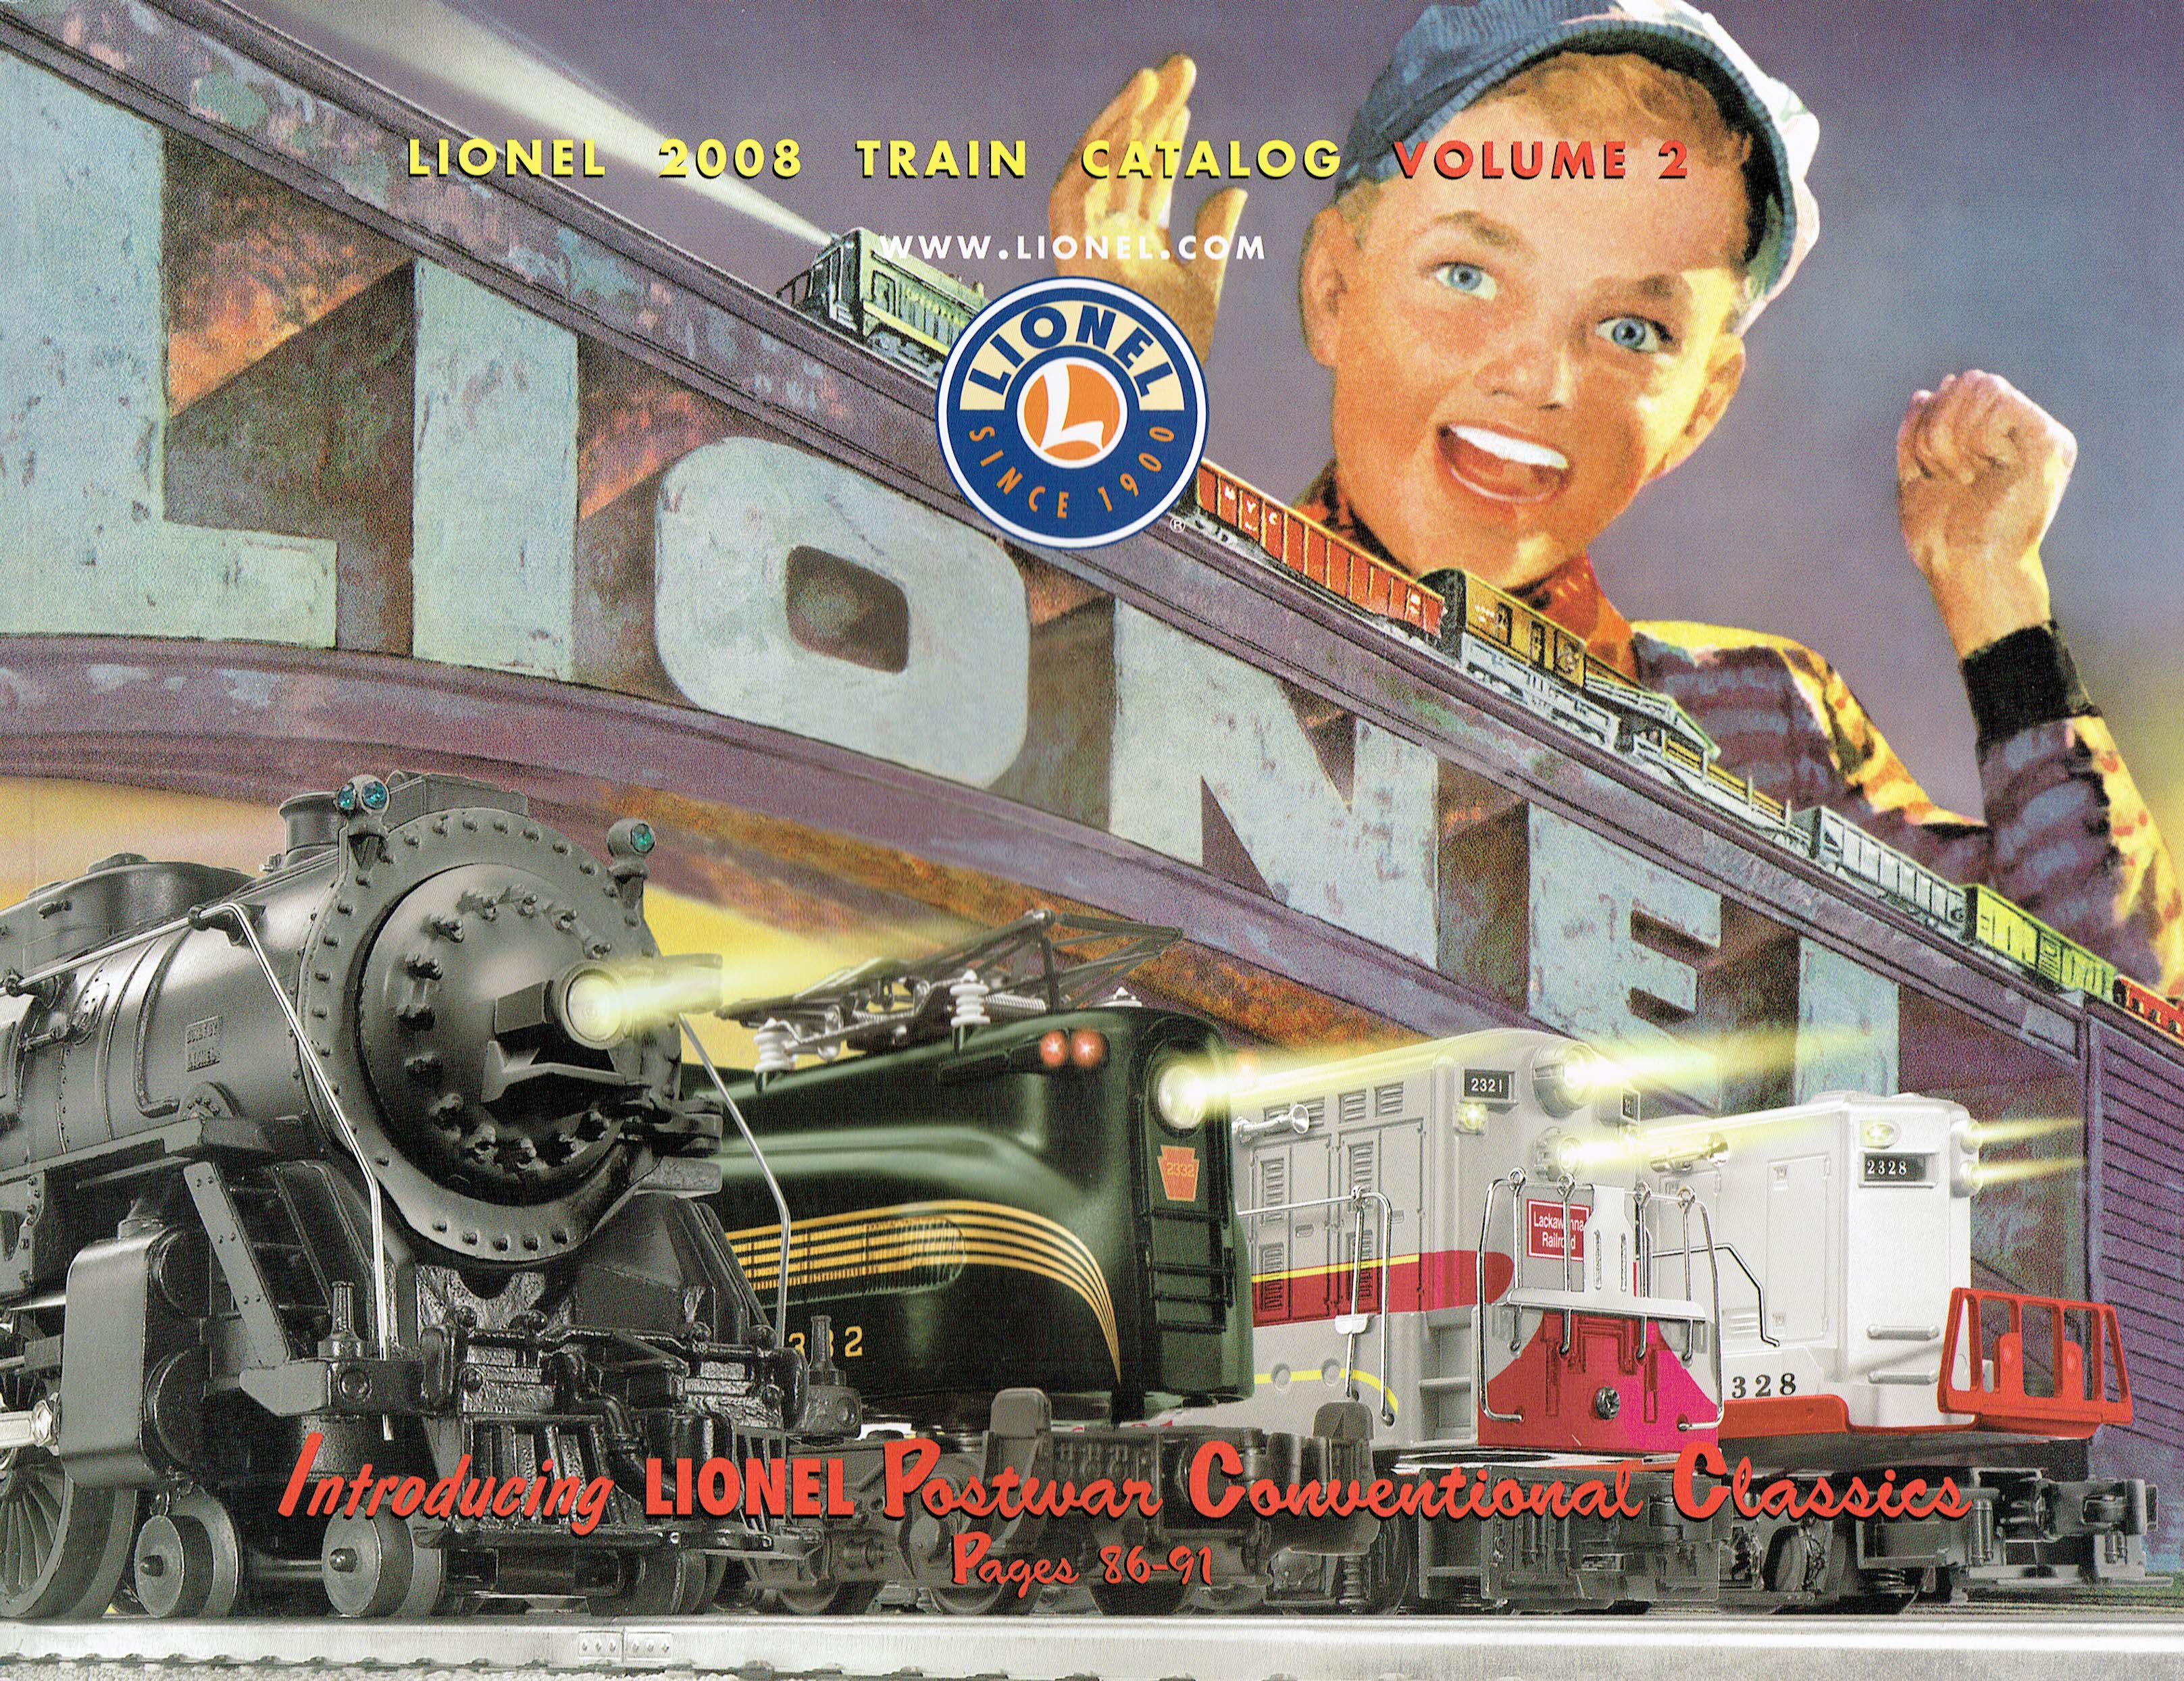 Lionel 2008 Train Catalog Volume 2 image